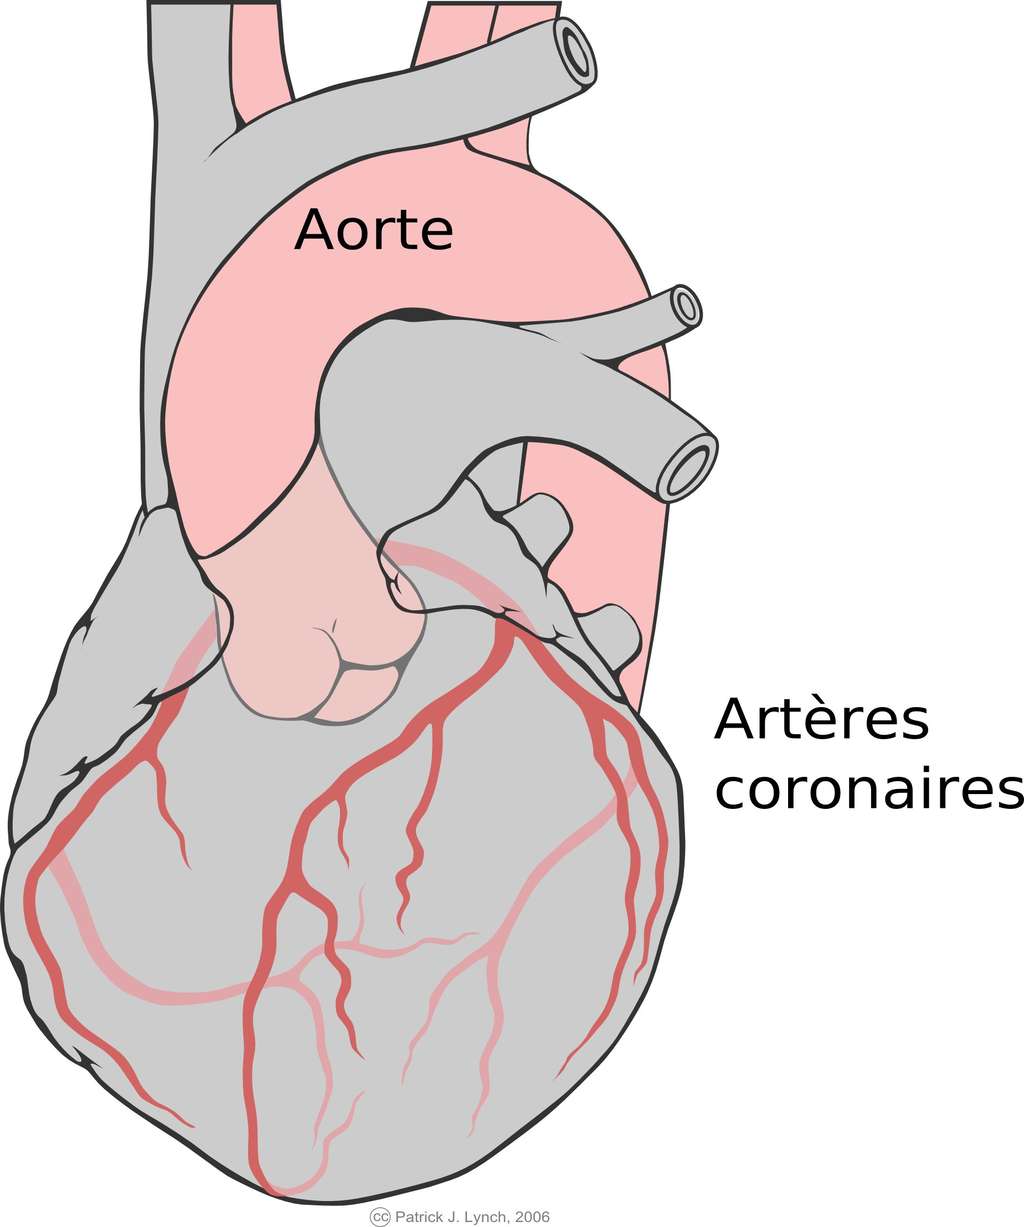 Les artères coronaires alimentent le muscle cardiaque. Pour une greffe de vaisseaux sanguins, on prélève souvent dans la jambe du patient. © Patrick J. Lynch, CC by sa 2.5, Wikimedia Commons